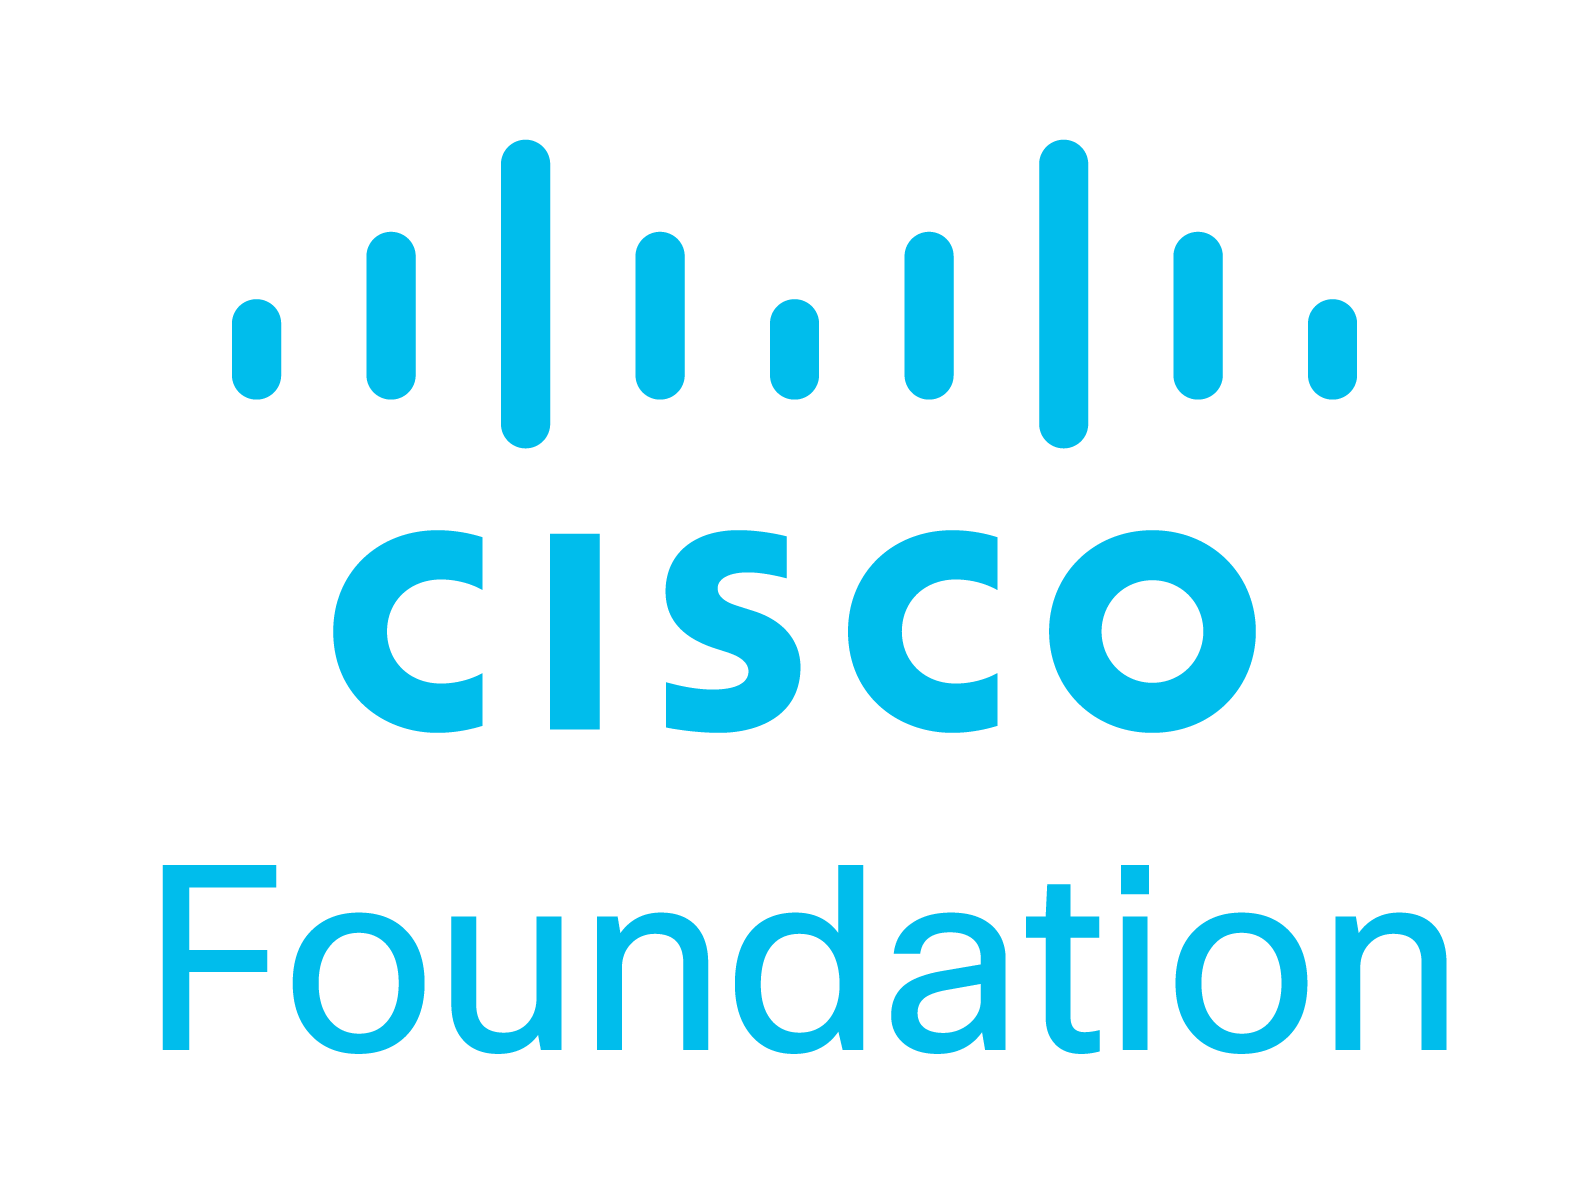 Cisco Foundation